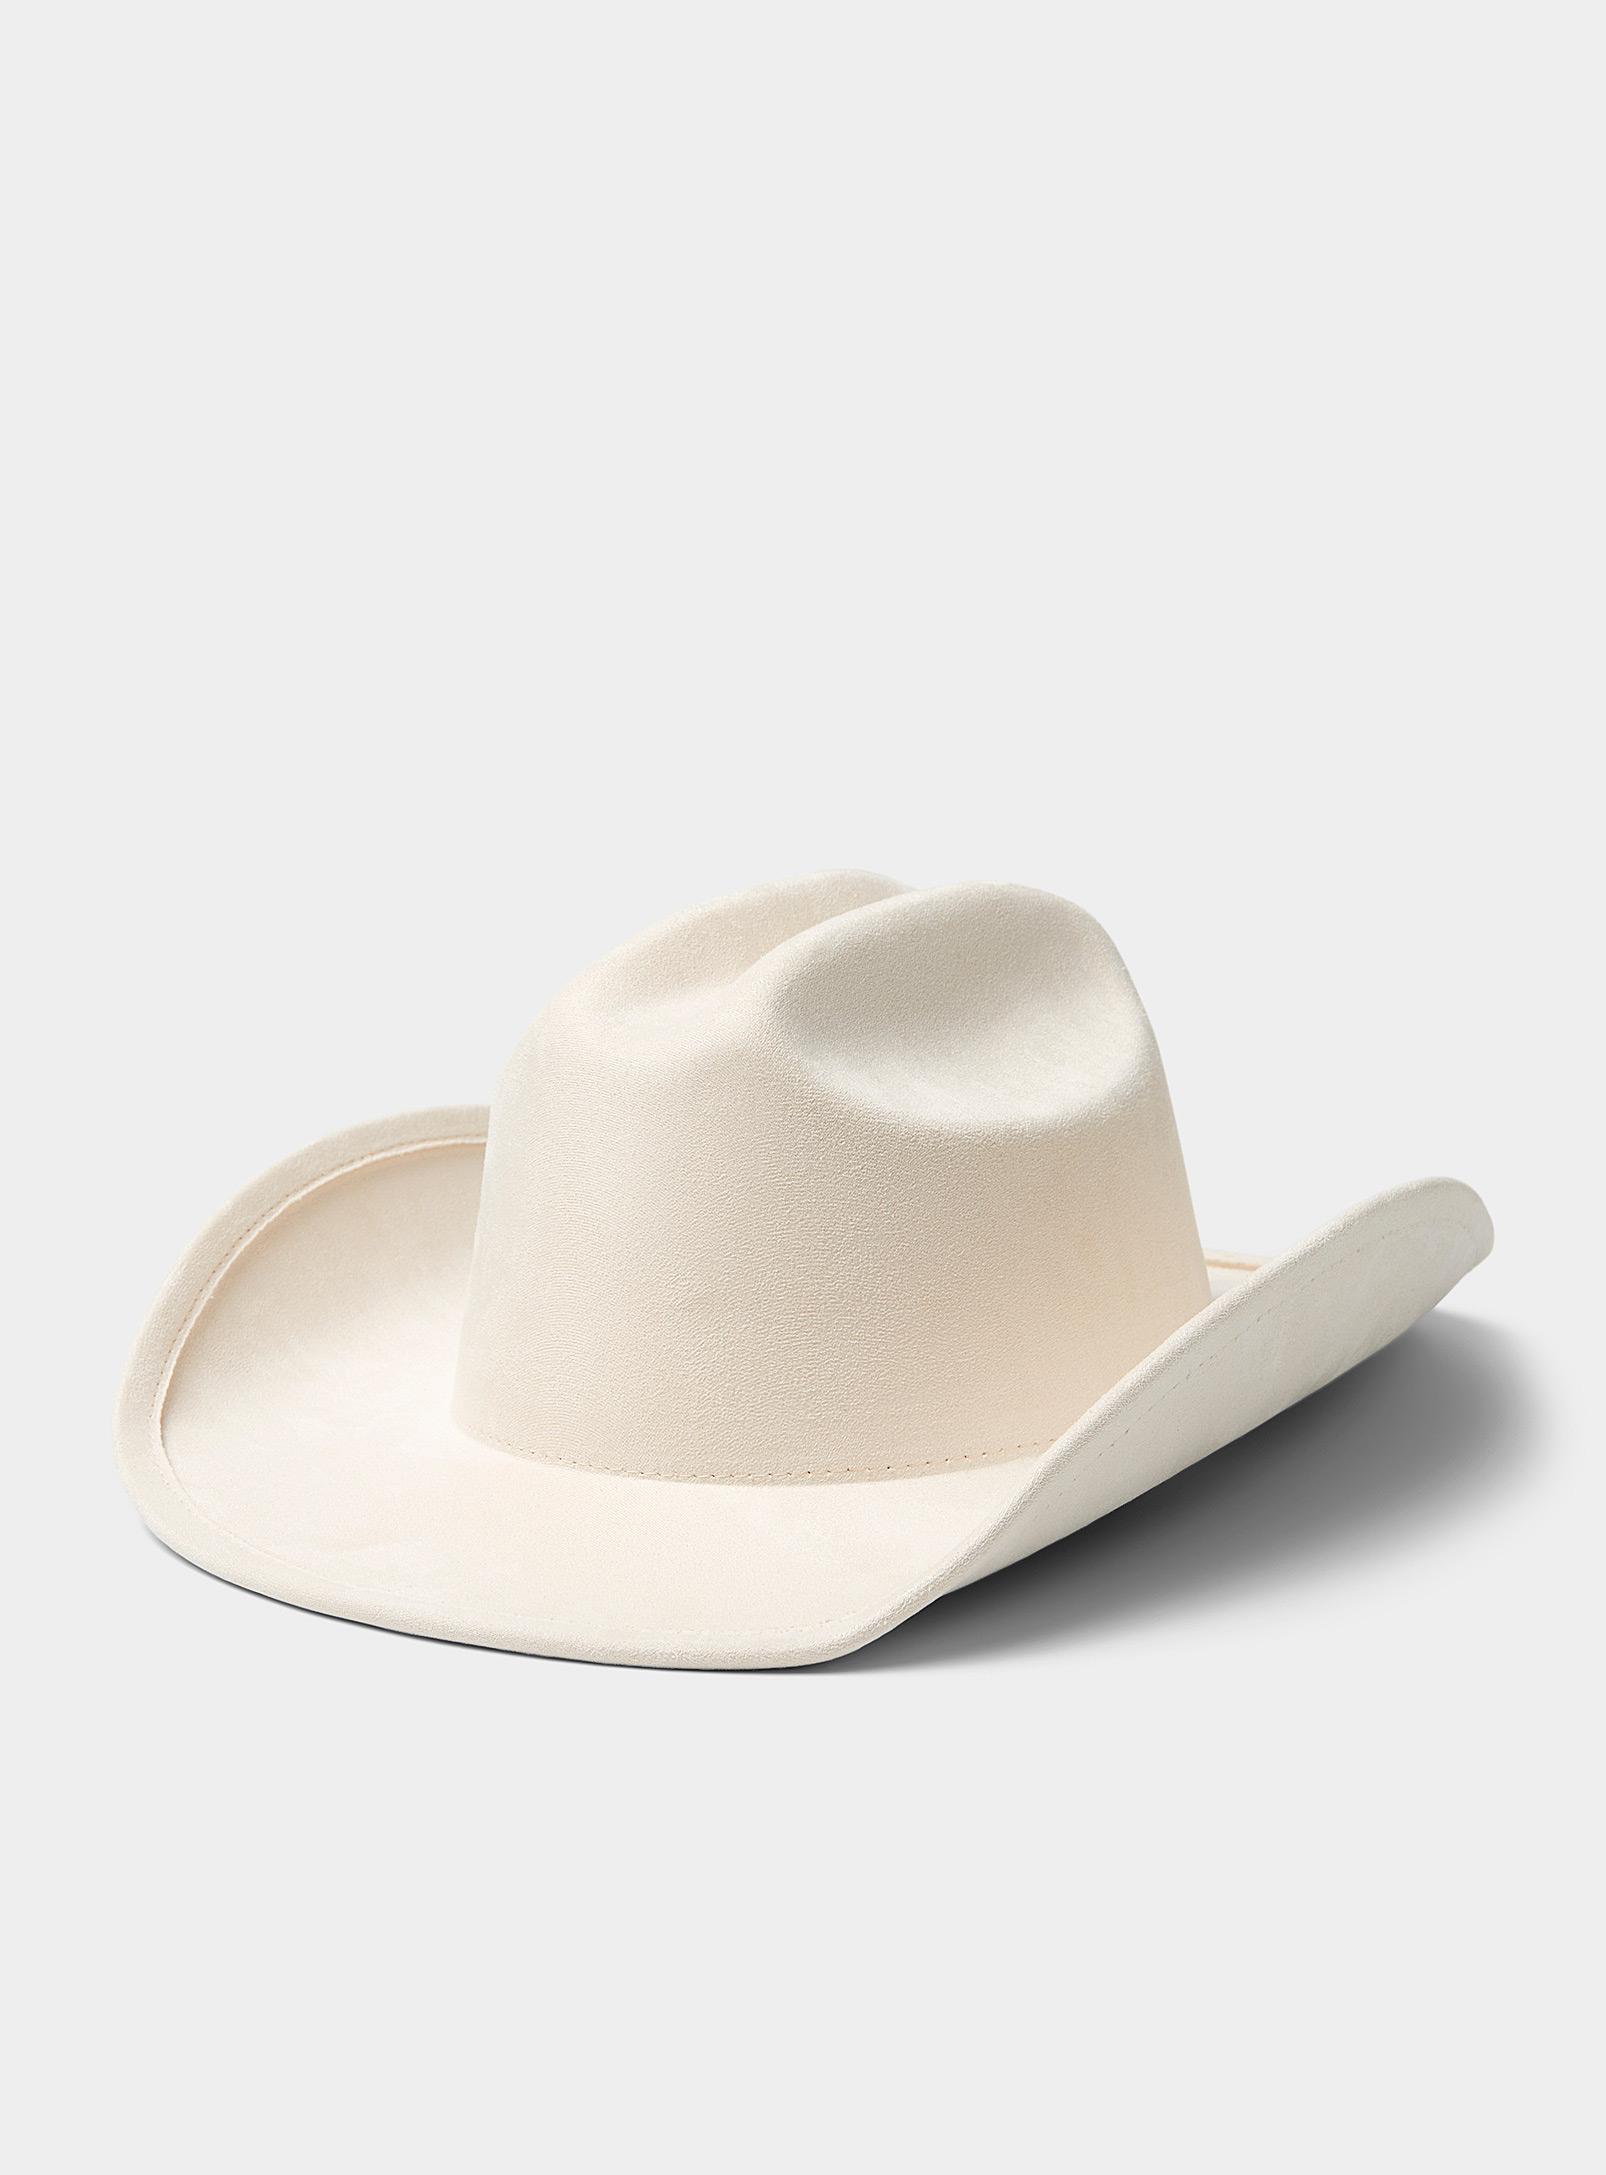 Simons - Women's Peachskin cowboy hat